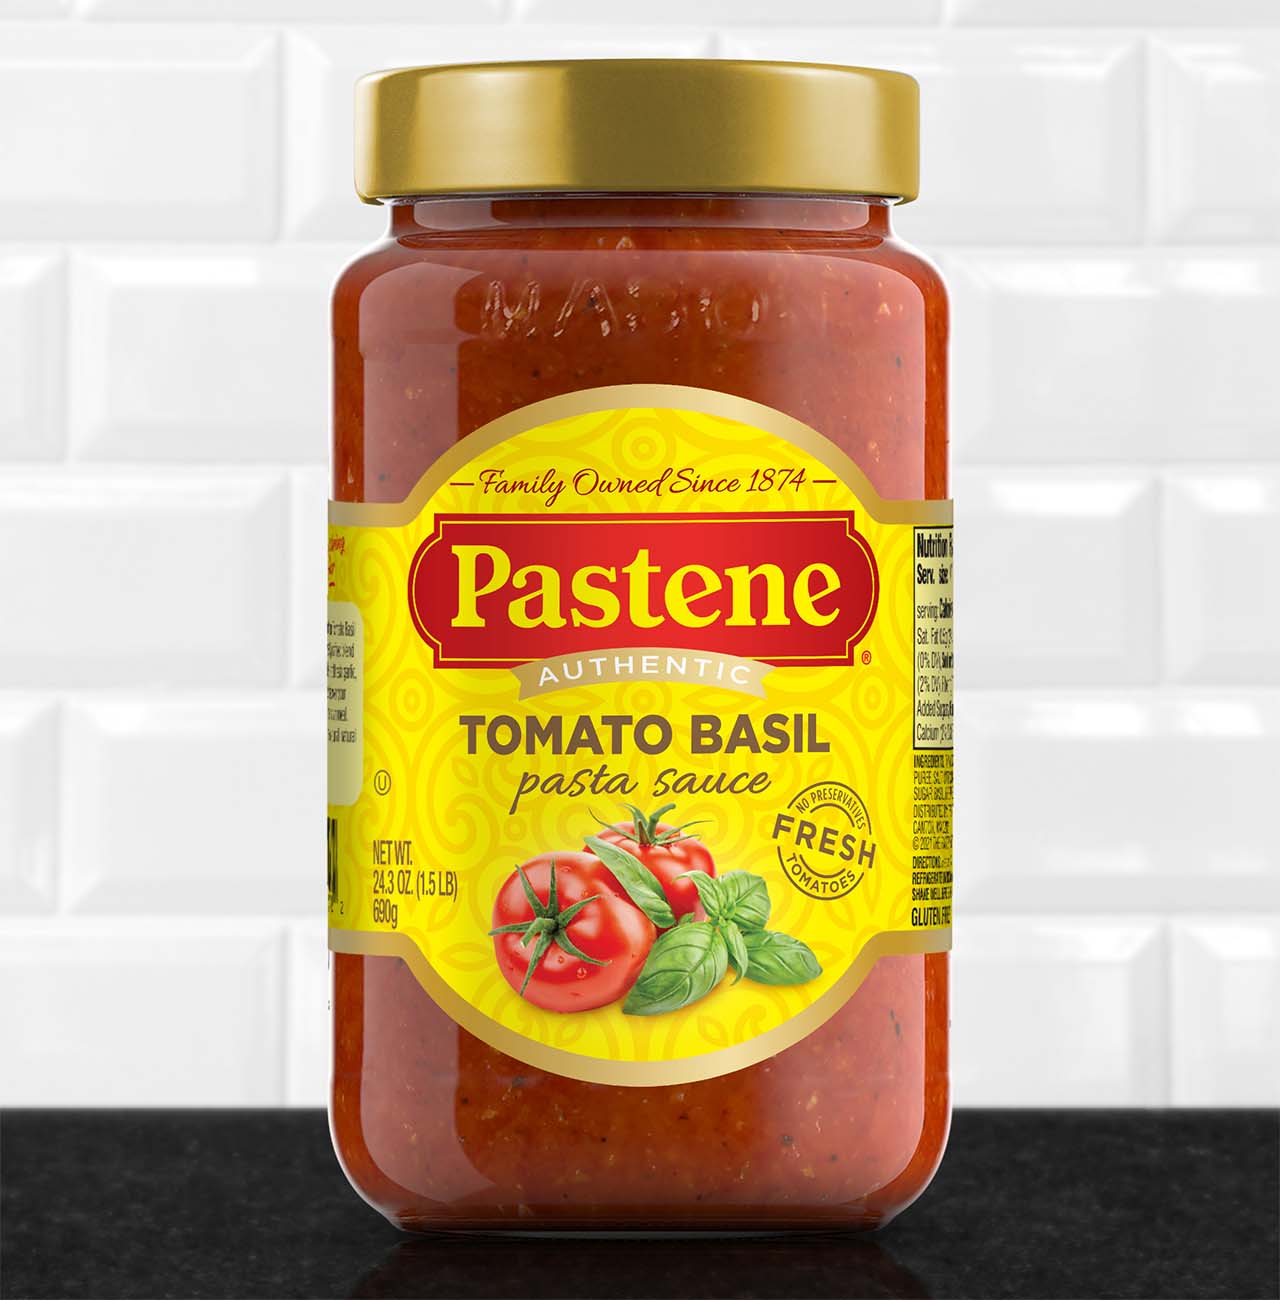 Pastene Tomato Basil Pasta Sauce